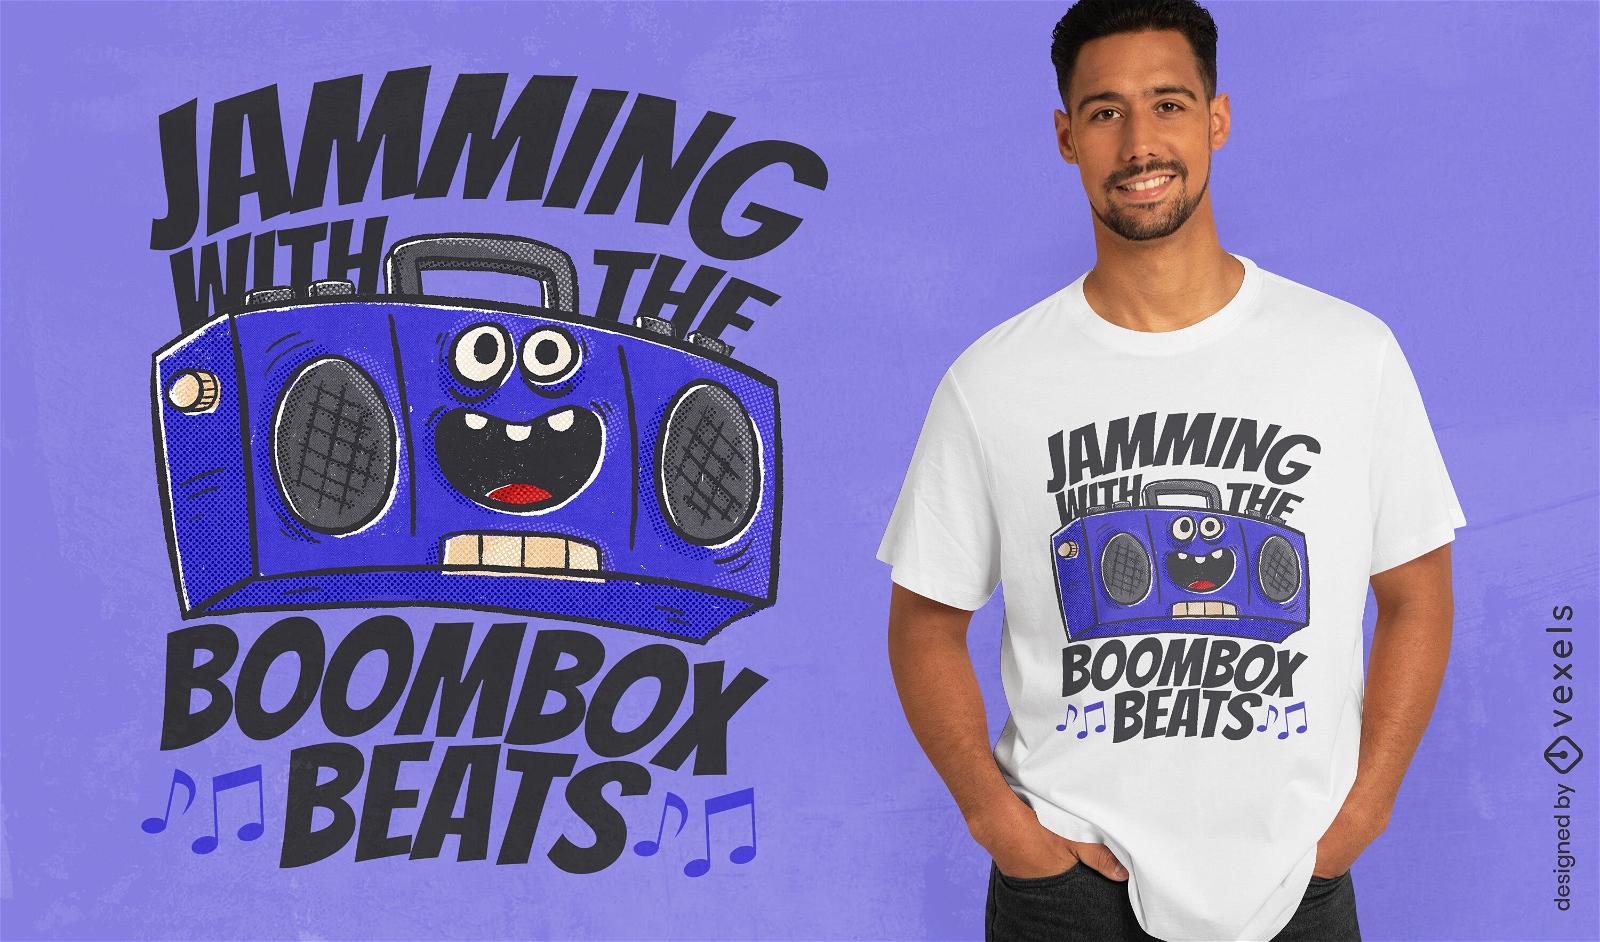 Boombox retro supera o design de camisetas